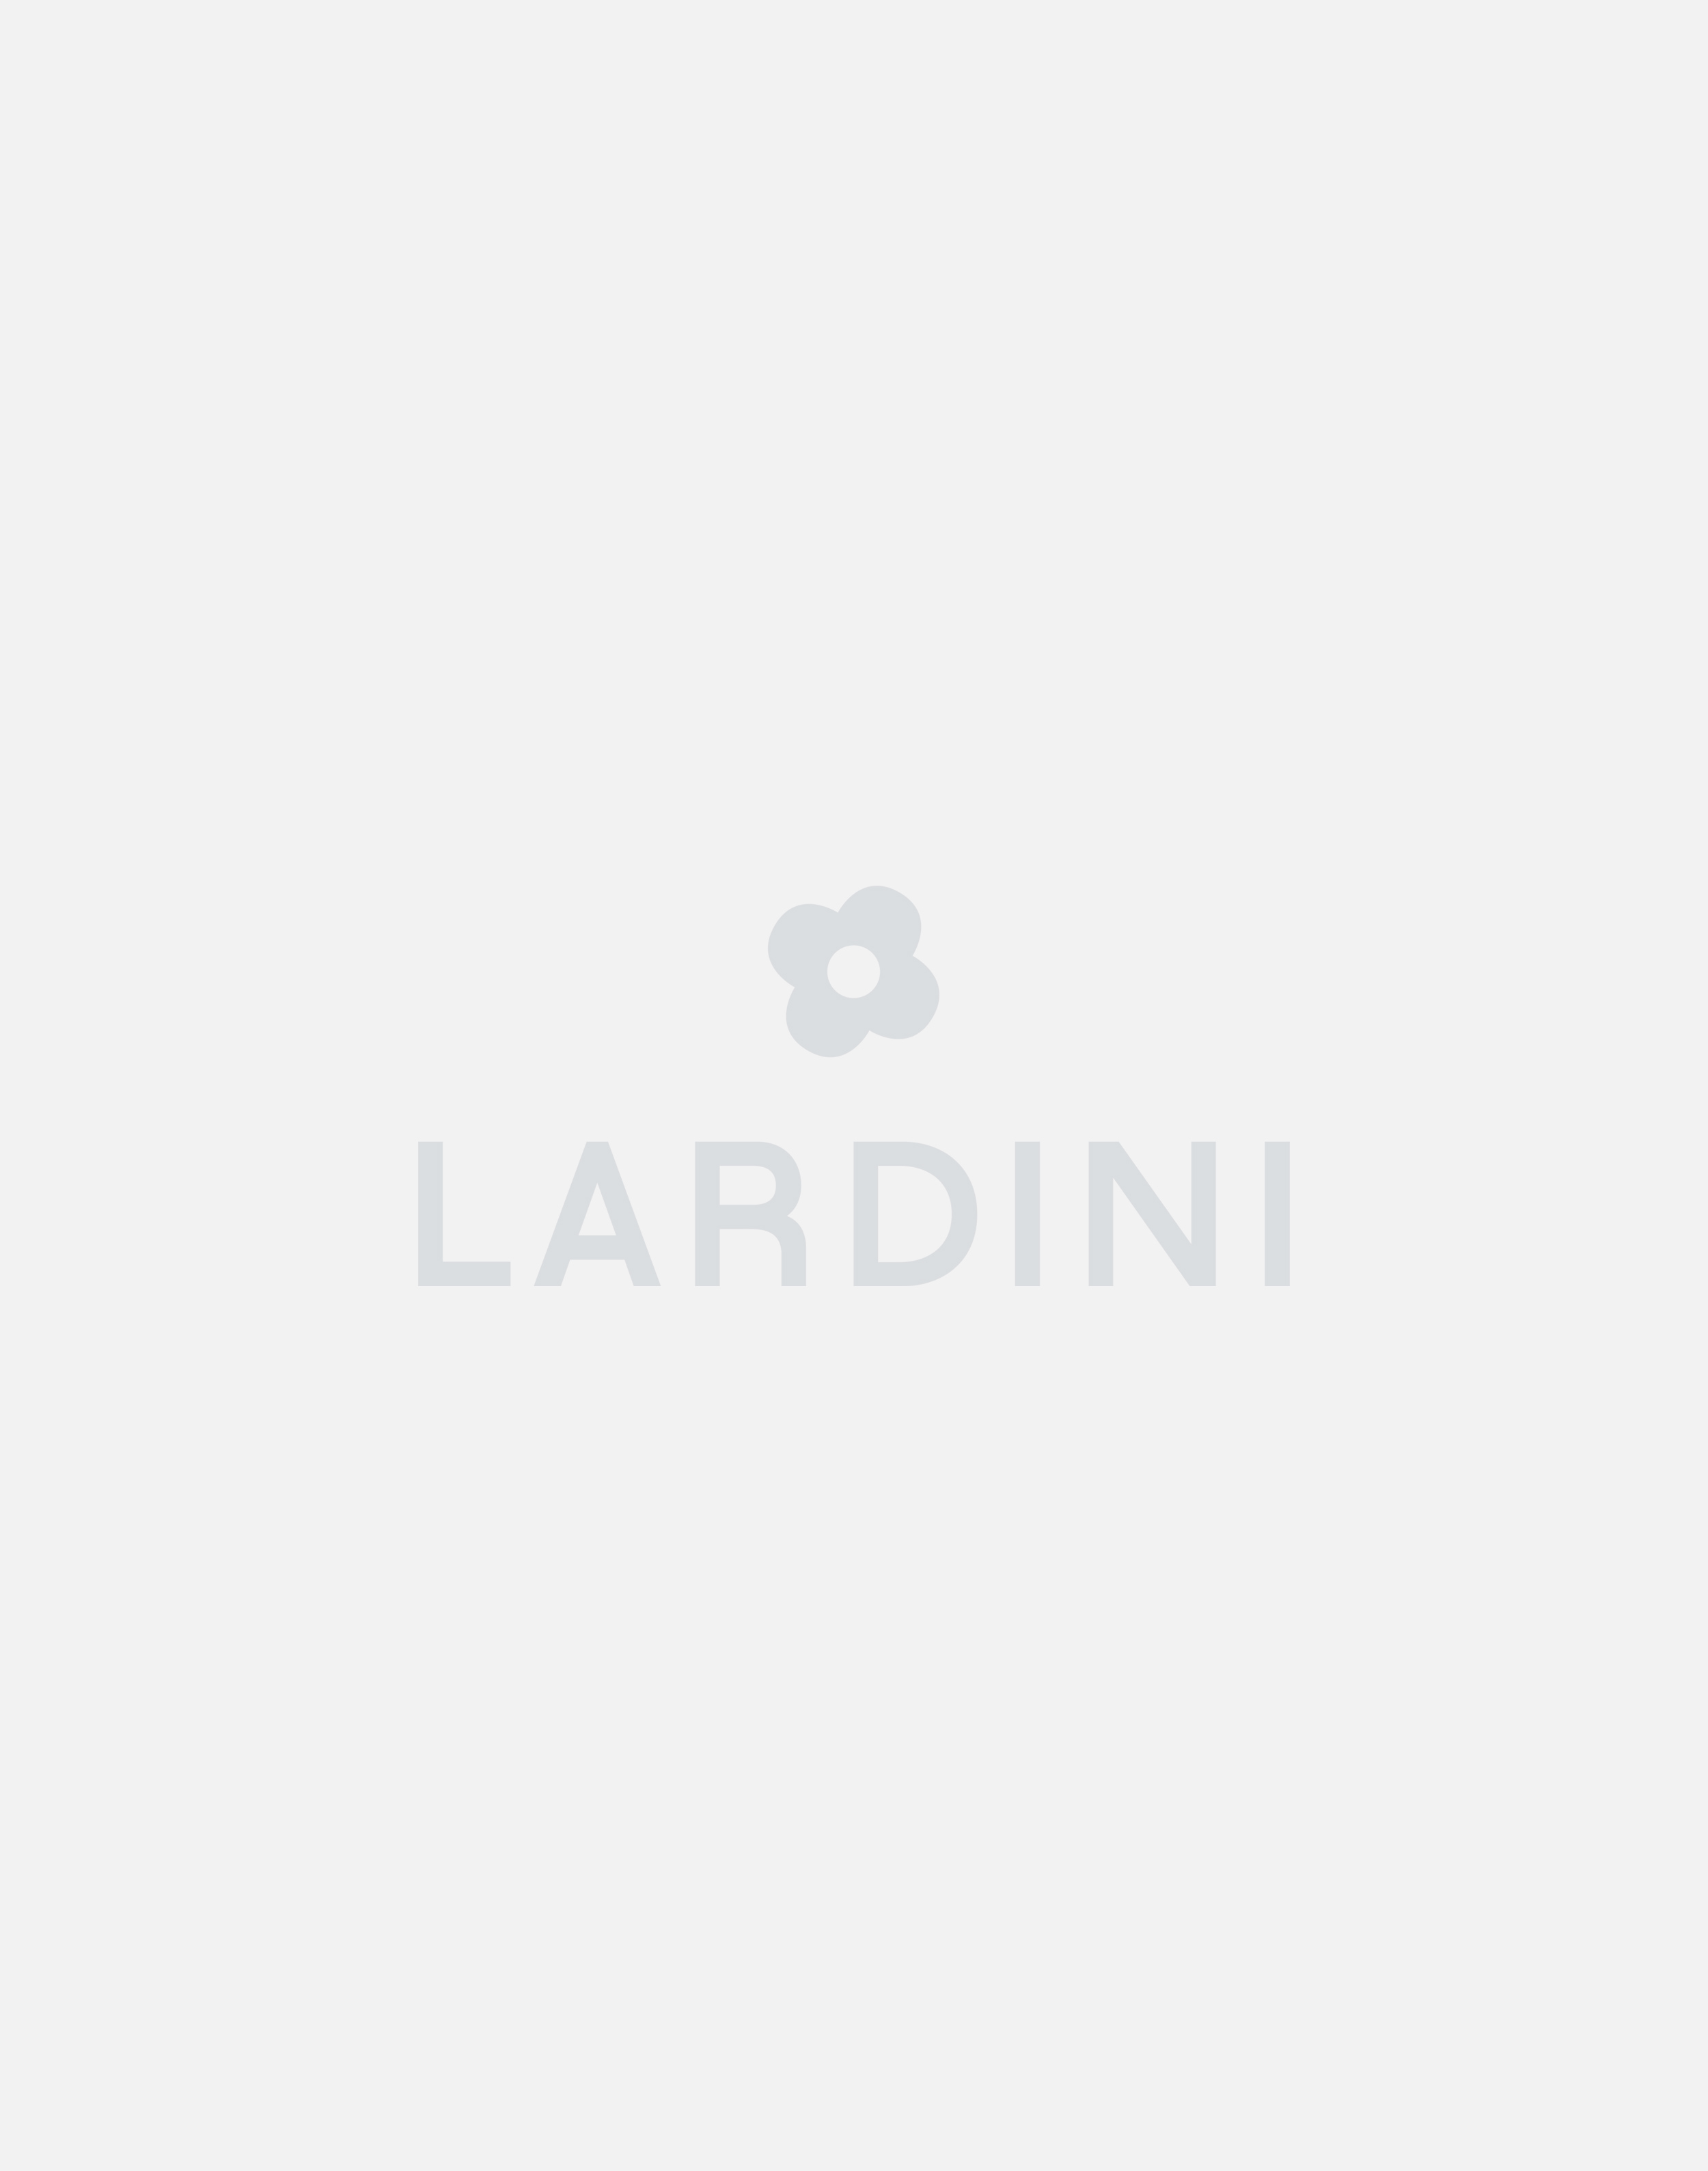 White trousers - Luigi Lardini capsule 4